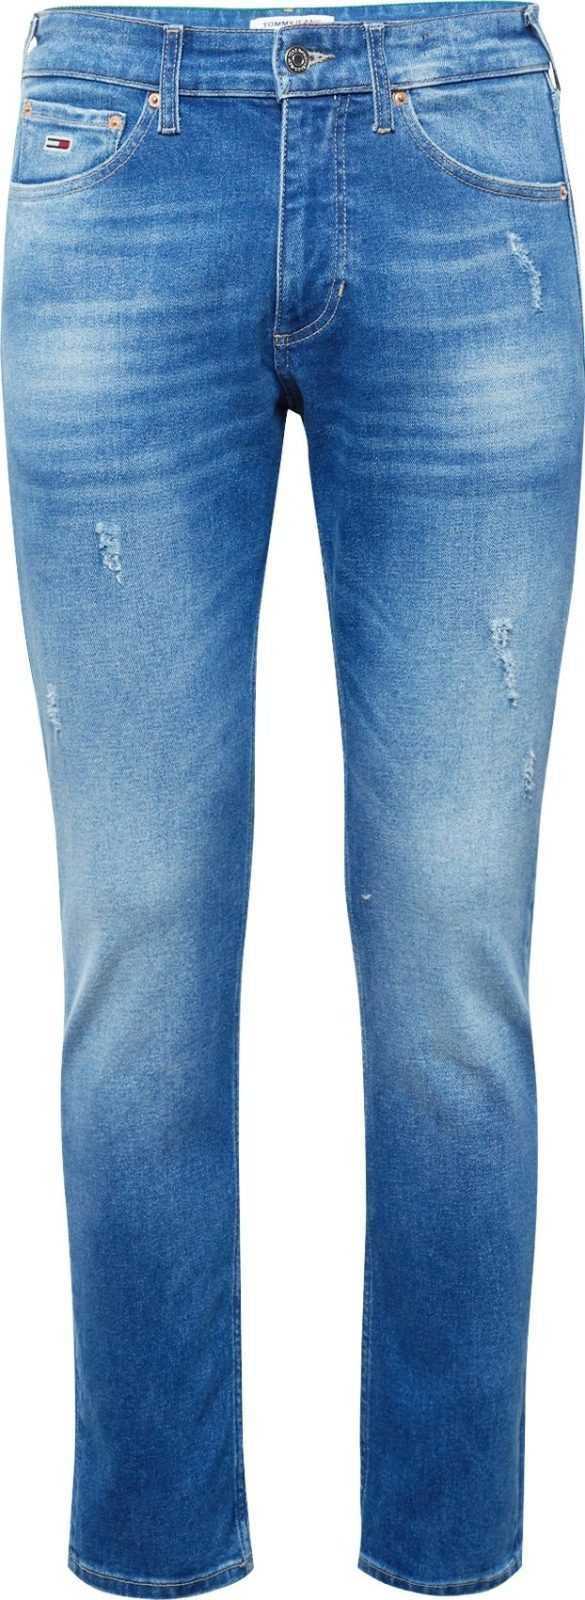 Tommy Jeans Džíny 'SCANTON' modrá džínovina